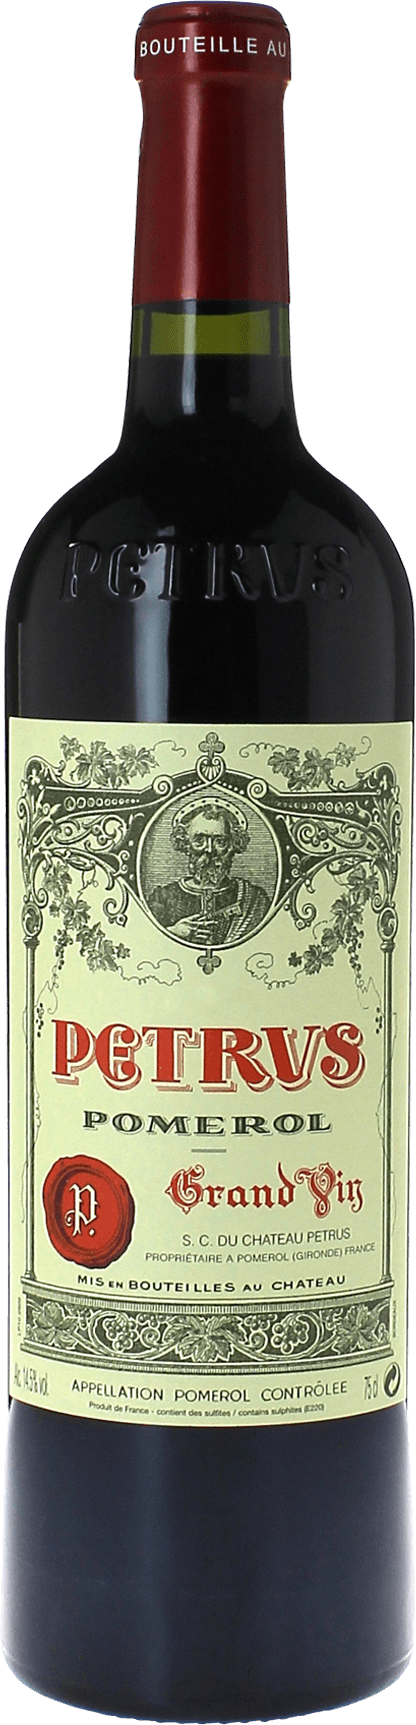 Petrus 1997  Pomerol, Bordeaux rouge